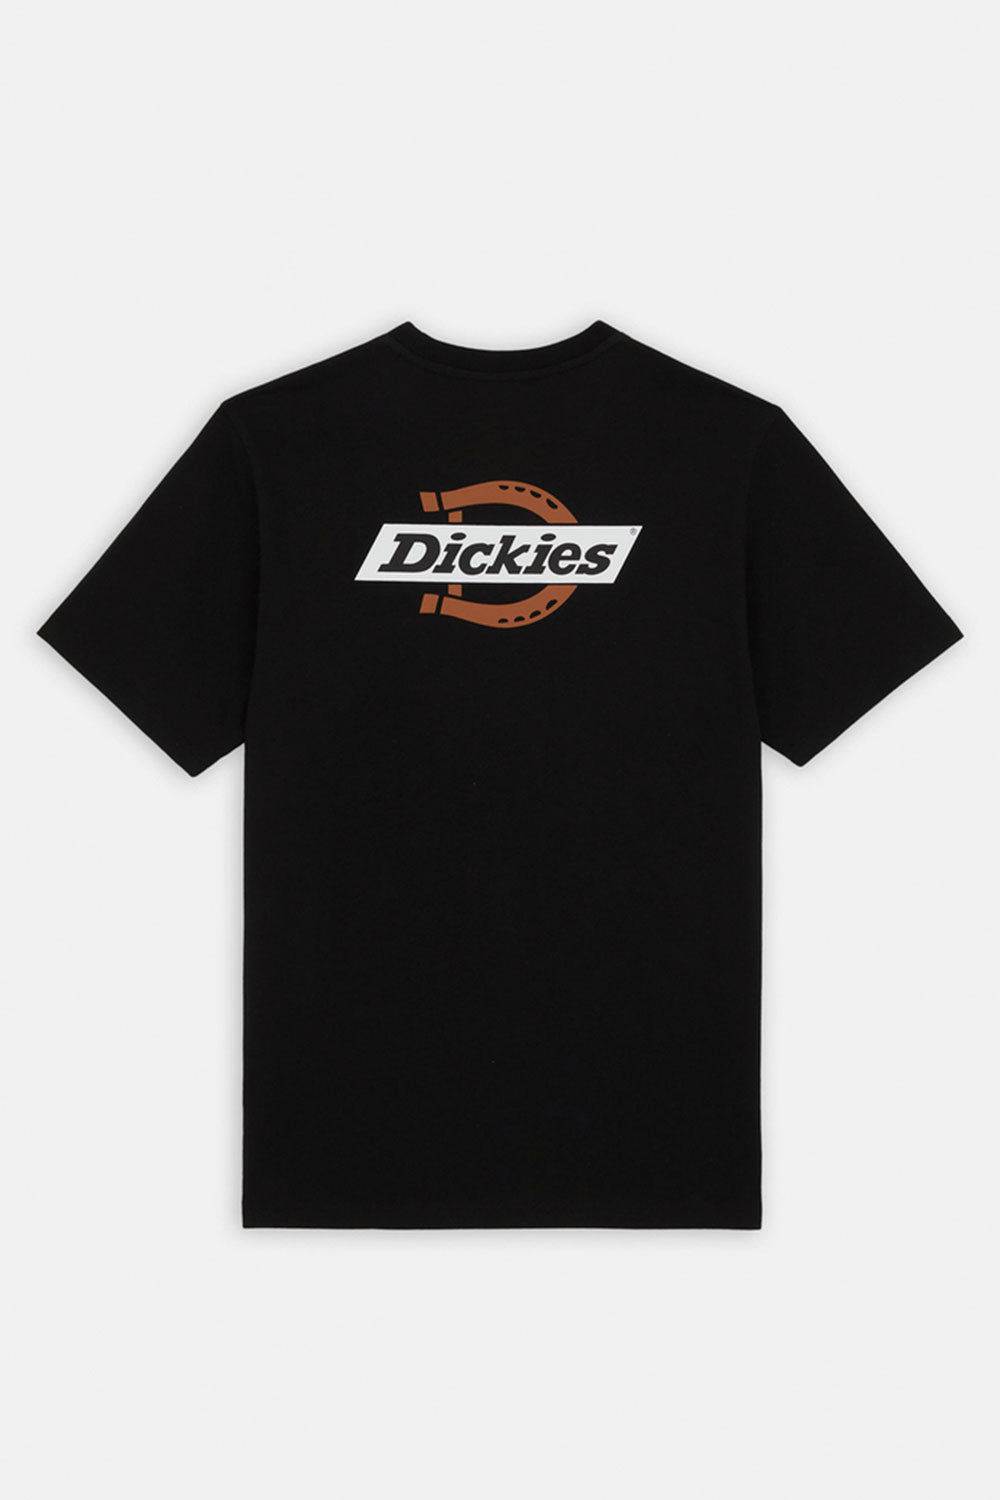 דיקיז חולצת טי קצרה Ruston בצבע שחור לגברים-Dickies-XS-נאקו